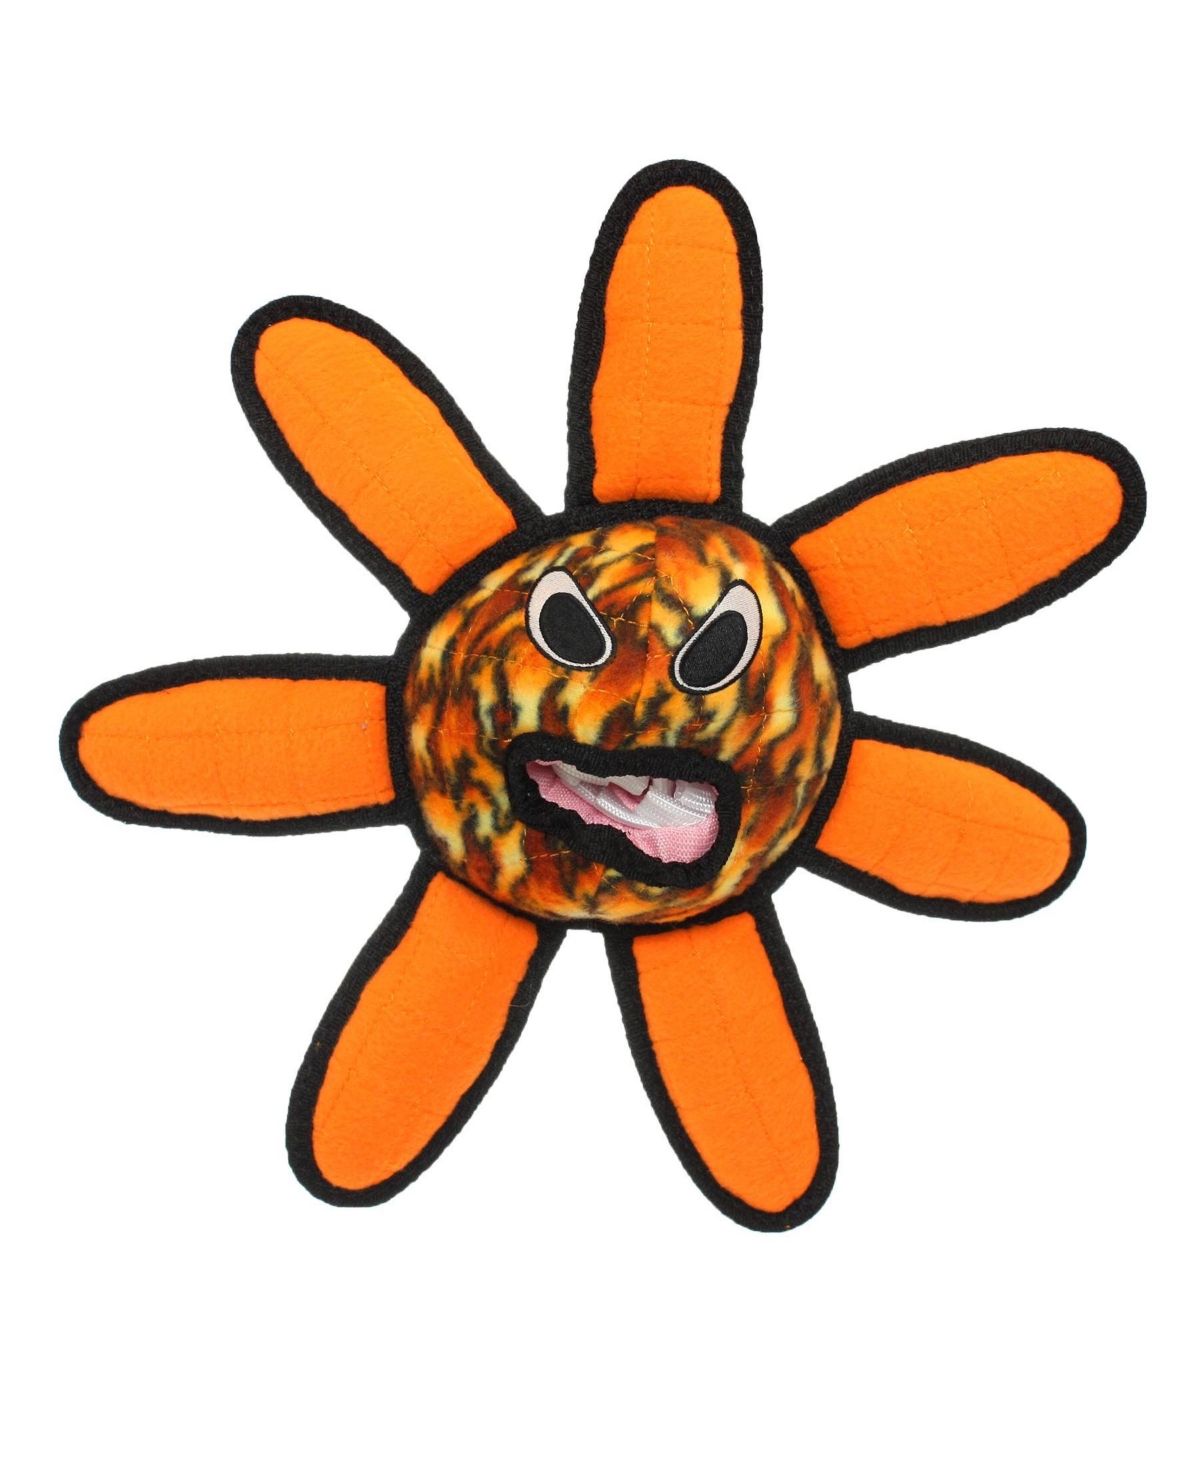 Alien Ball Flower Fire, Dog Toy - Medium Orange